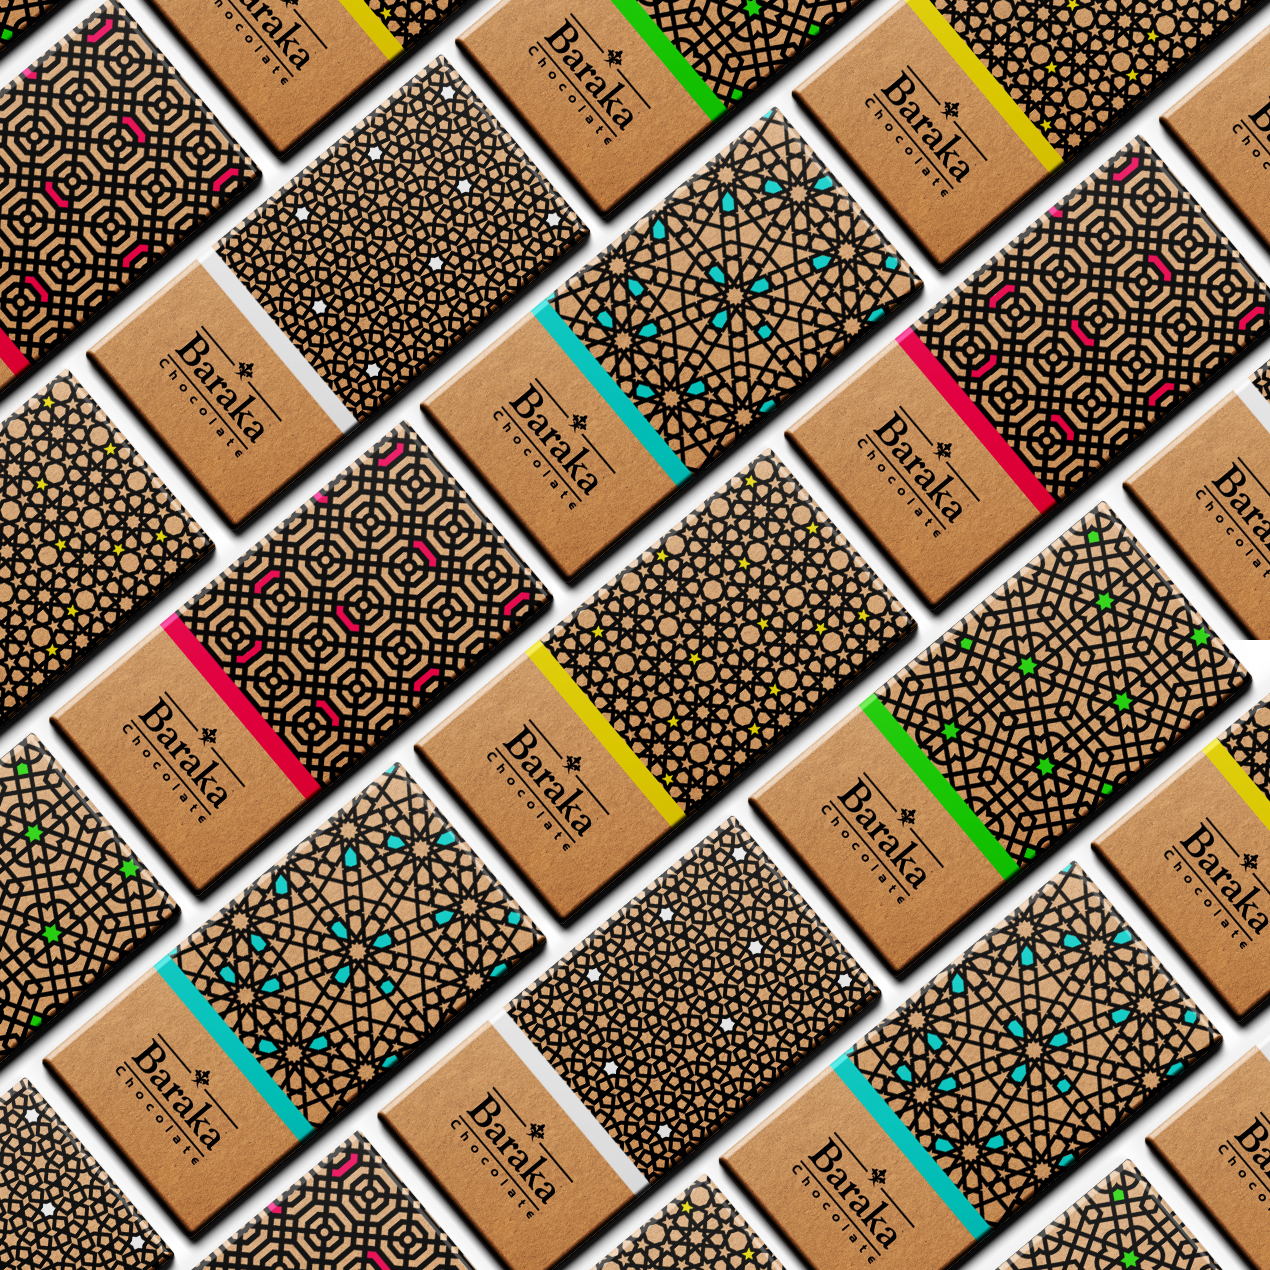 Baraka巧克力包装设计